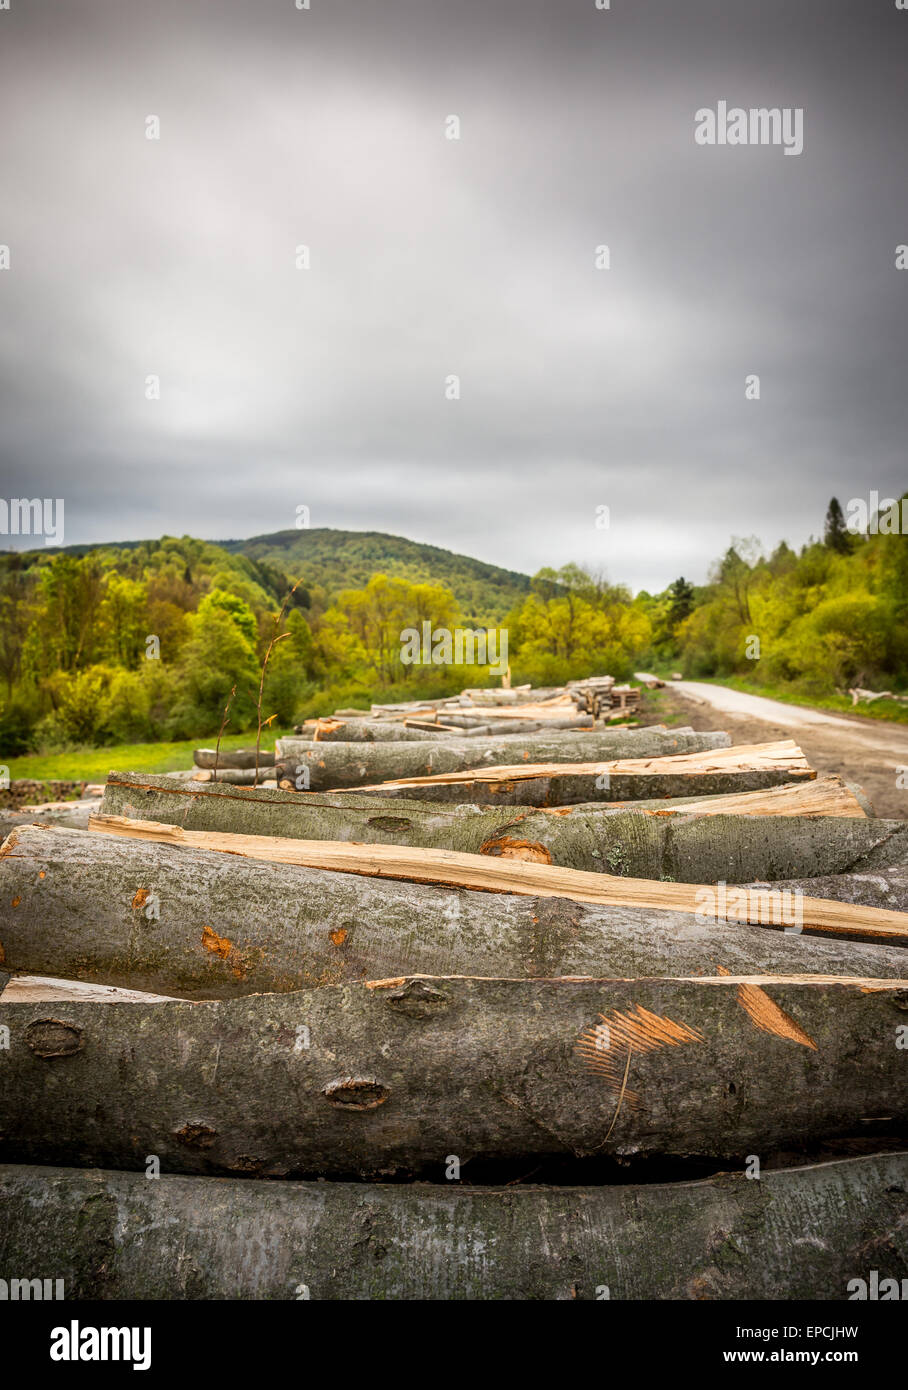 El tiempo lluvioso a lo largo de paisaje rural con troncos de madera en primer plano Foto de stock